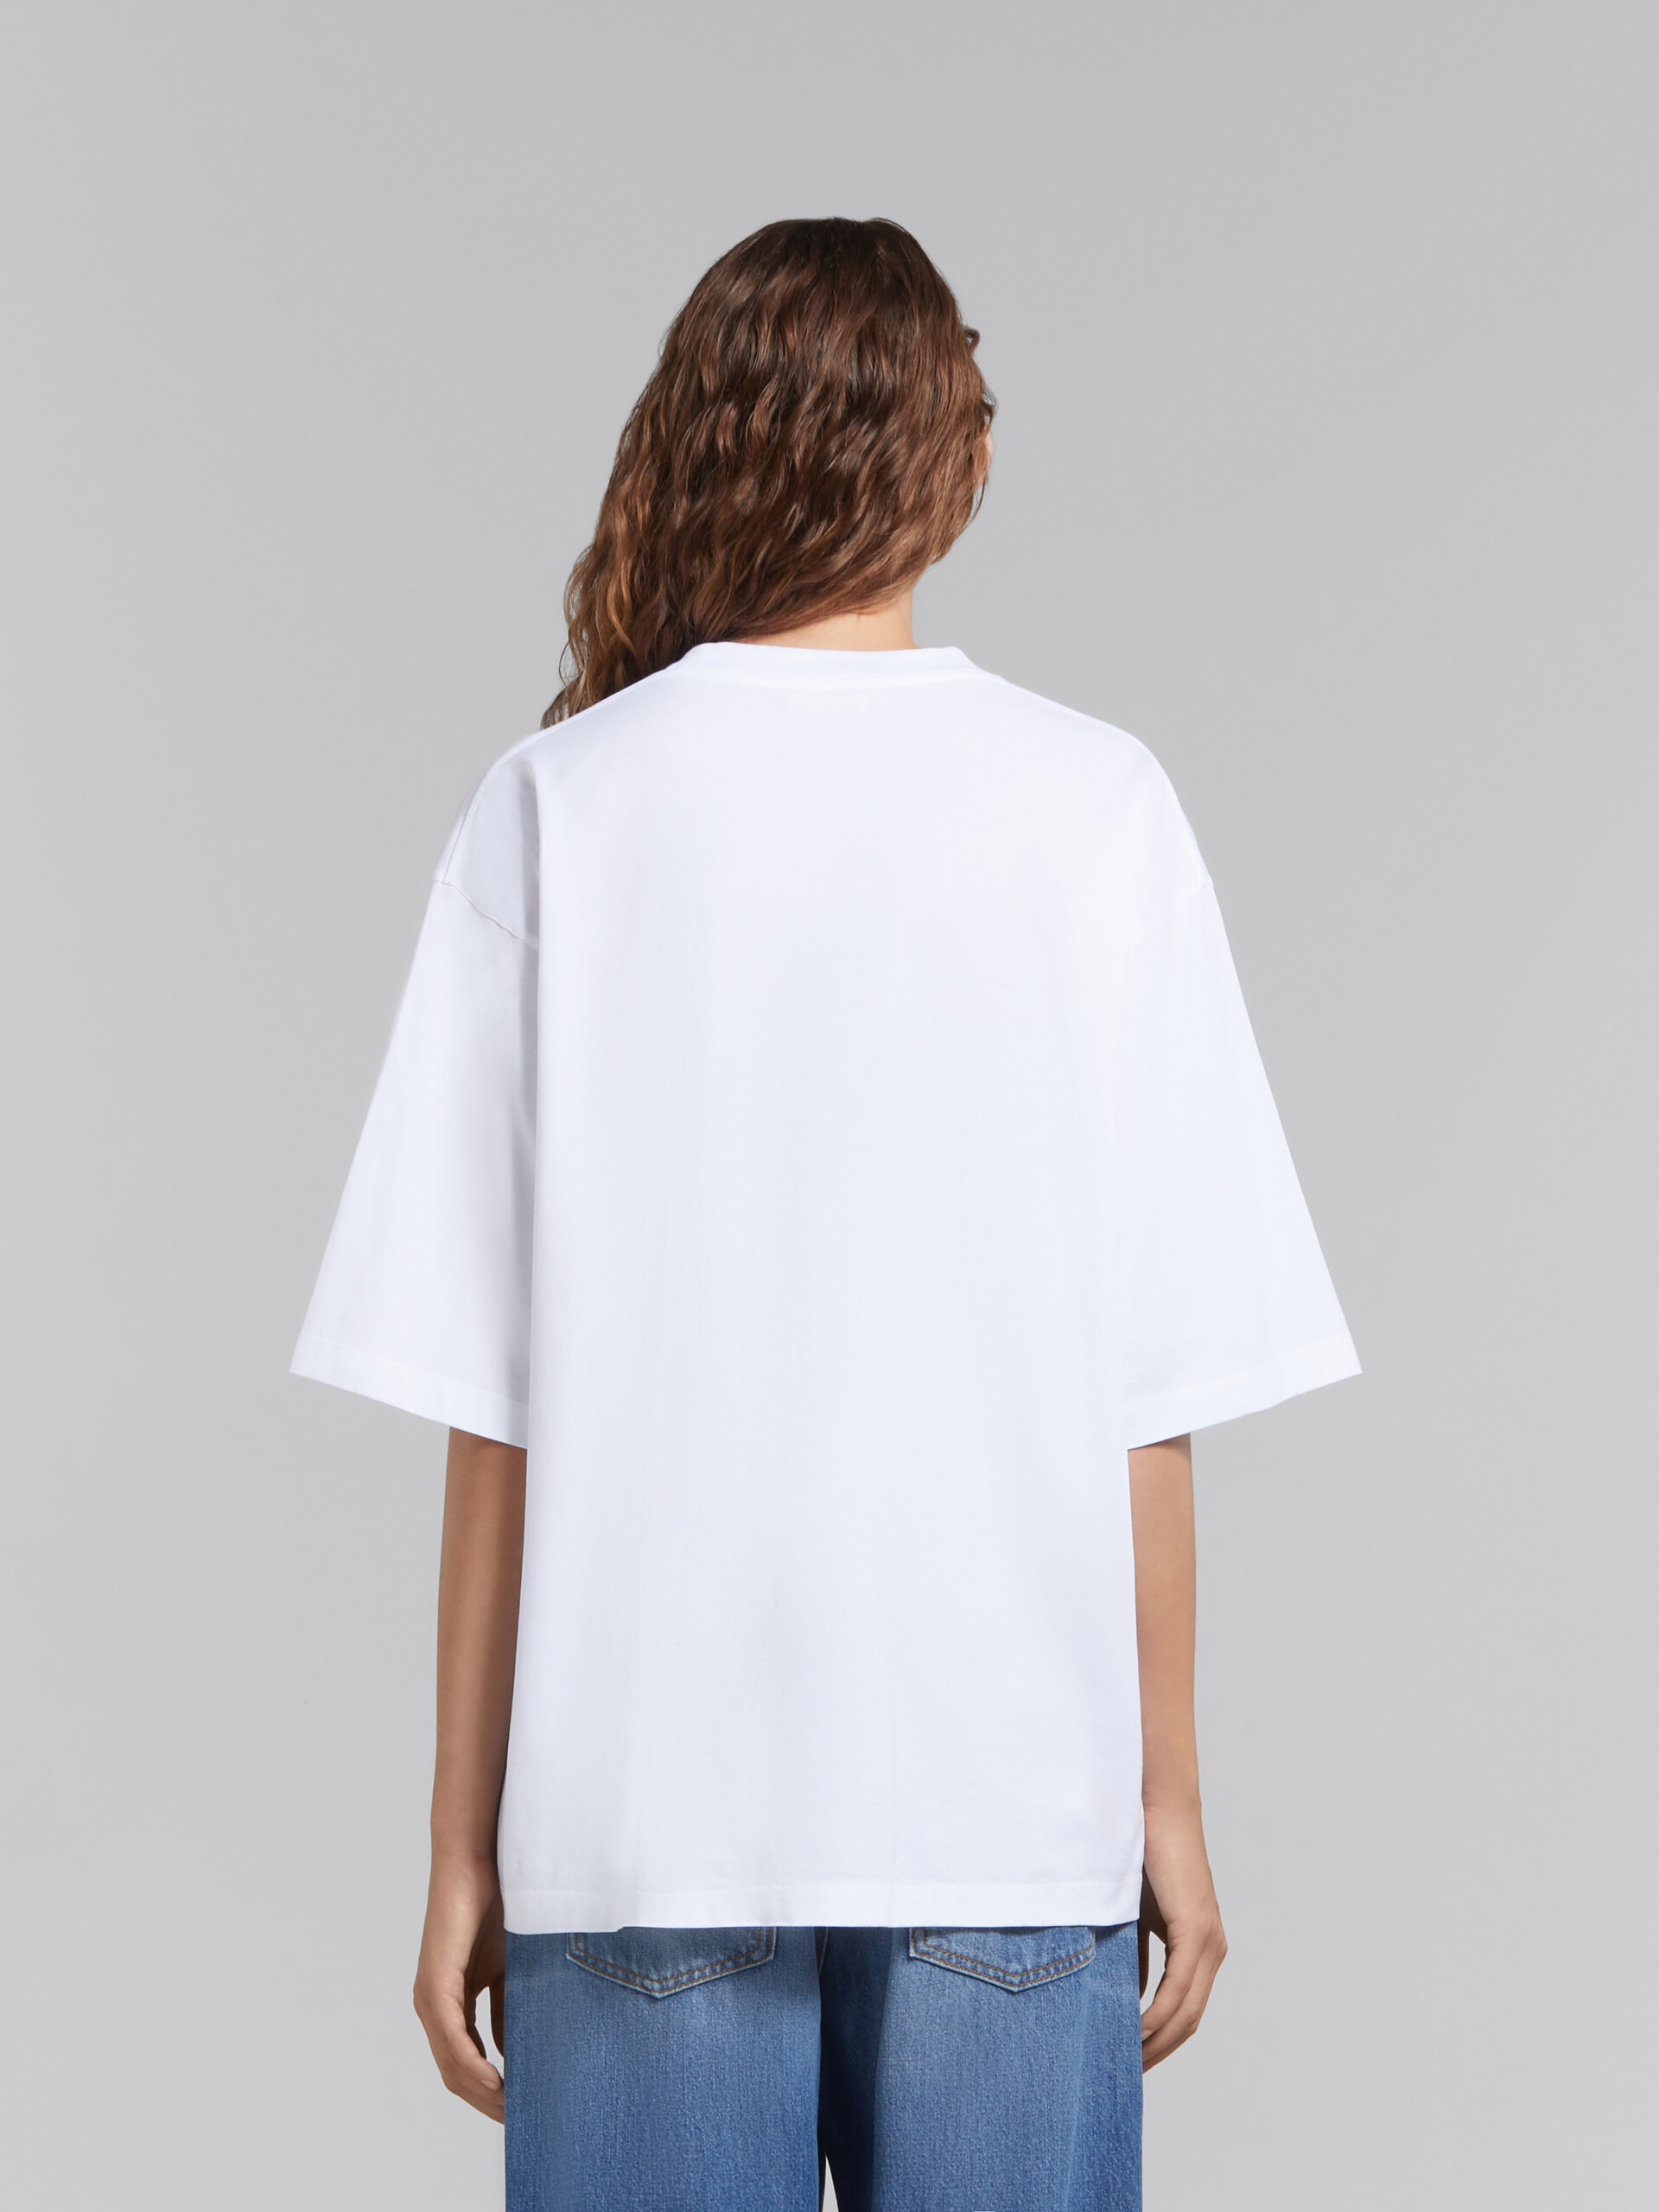 T-shirt en coton biologique blanc avec logo ondulé - T-shirts - Image 3